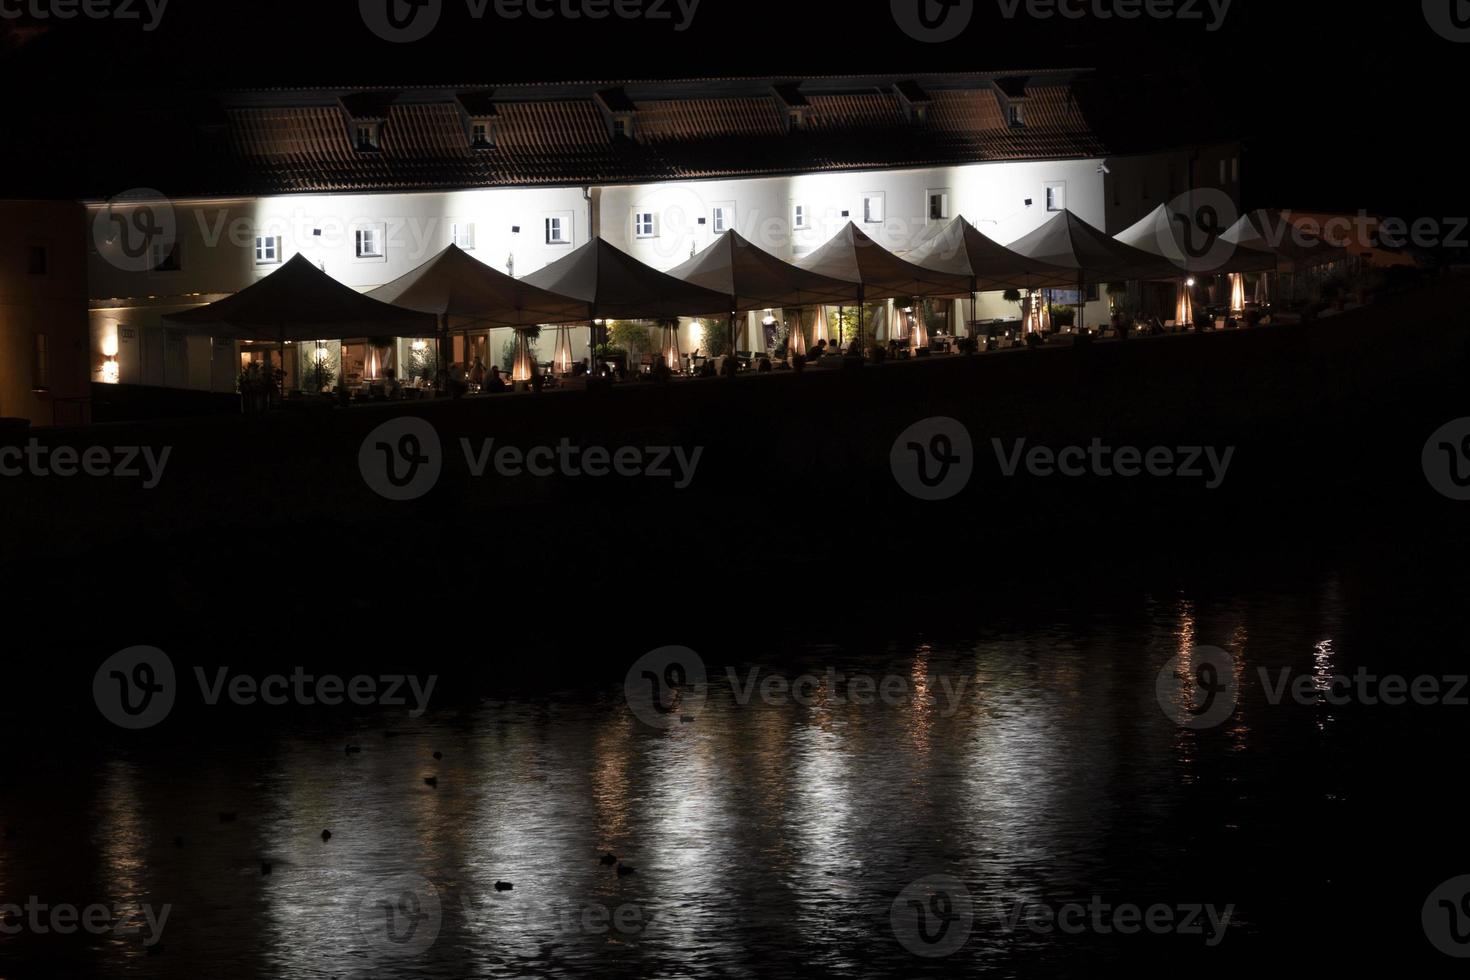 restaurang på flod prag se stadsbild från flod på natt foto